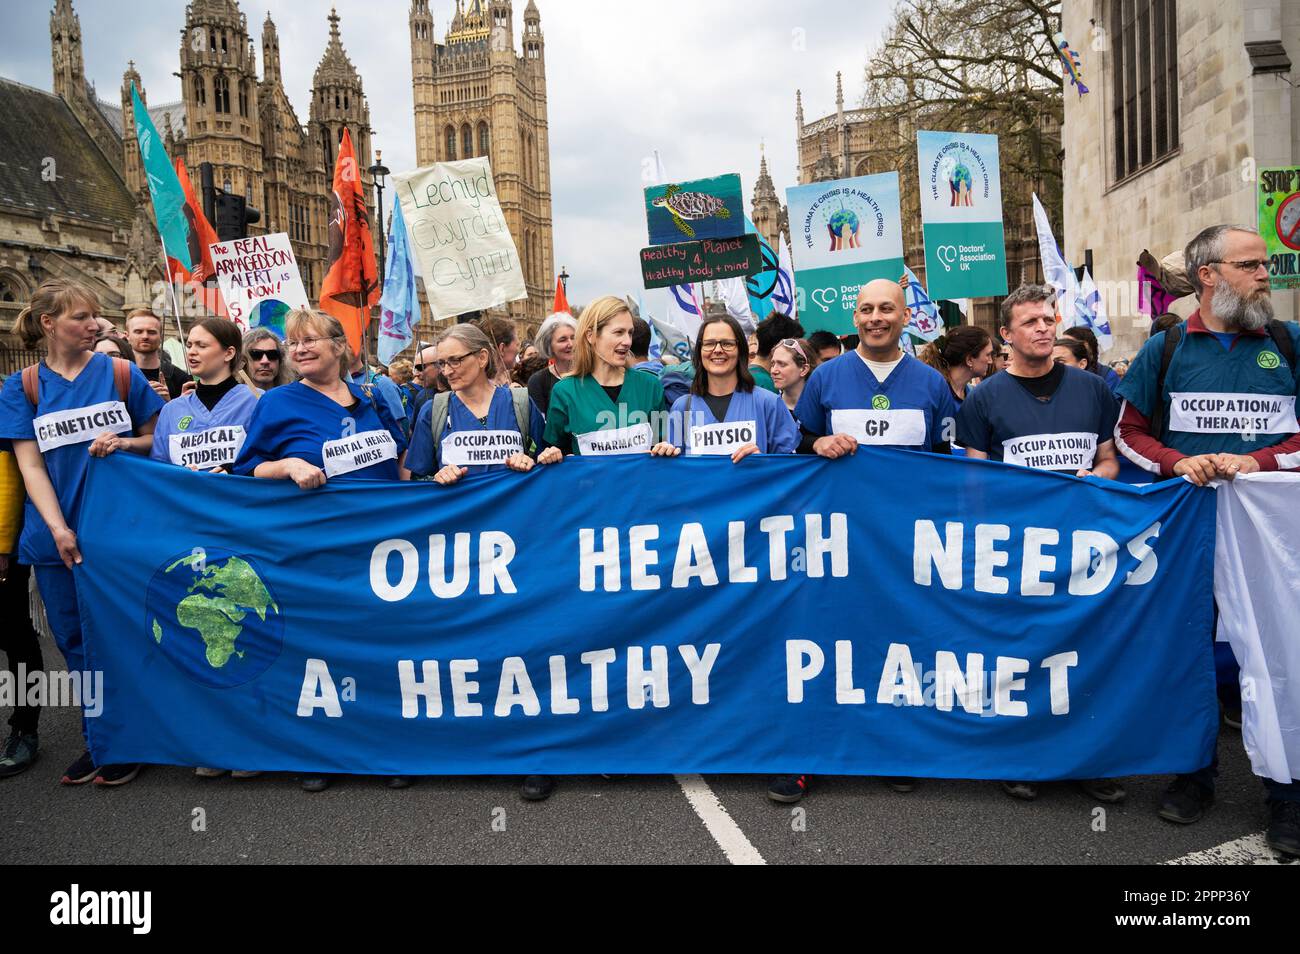 Nella Giornata della Terra, attivisti provenienti da tutta la Gran Bretagna si sono incontrati in Piazza del Parlamento per chiedere al governo di fare di più per affrontare il cambiamento climatico. Operatori sanitari. Foto Stock